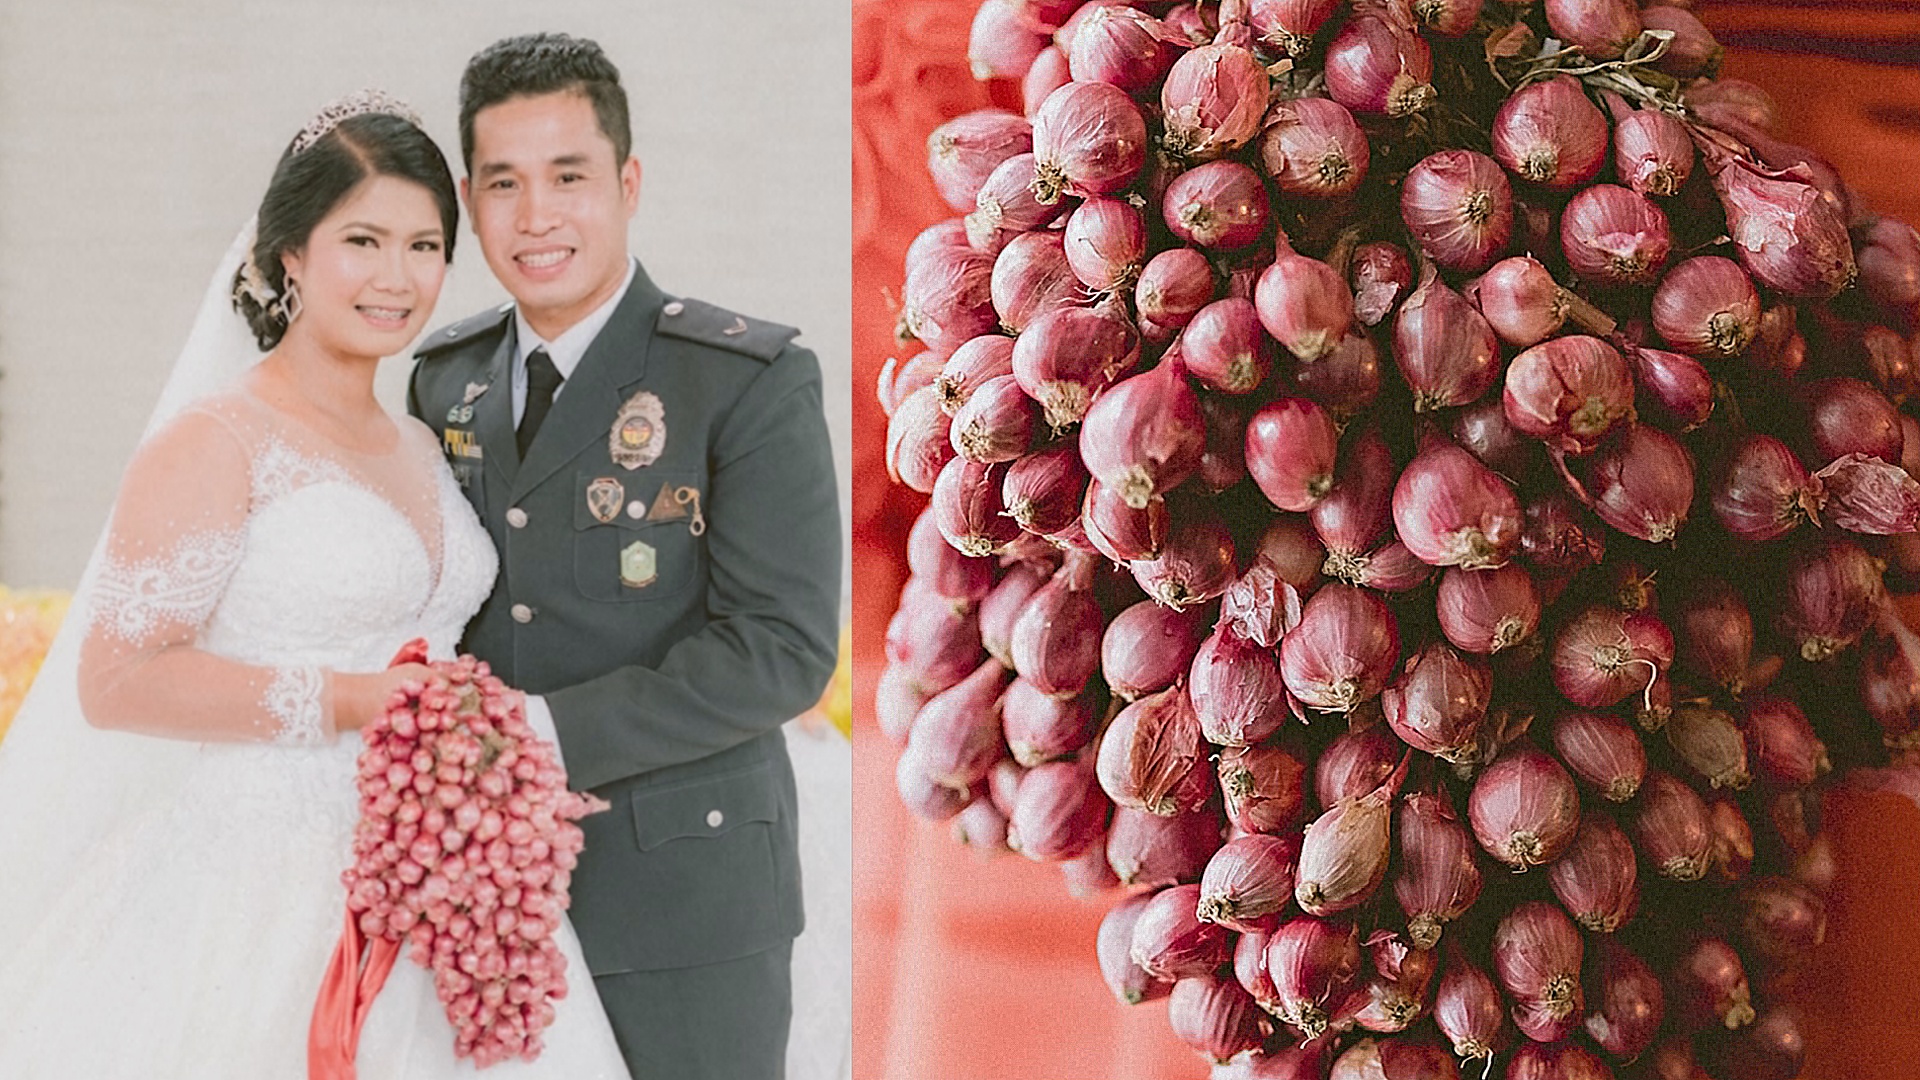 Филиппинская невеста пошла под венец с букетом из лука